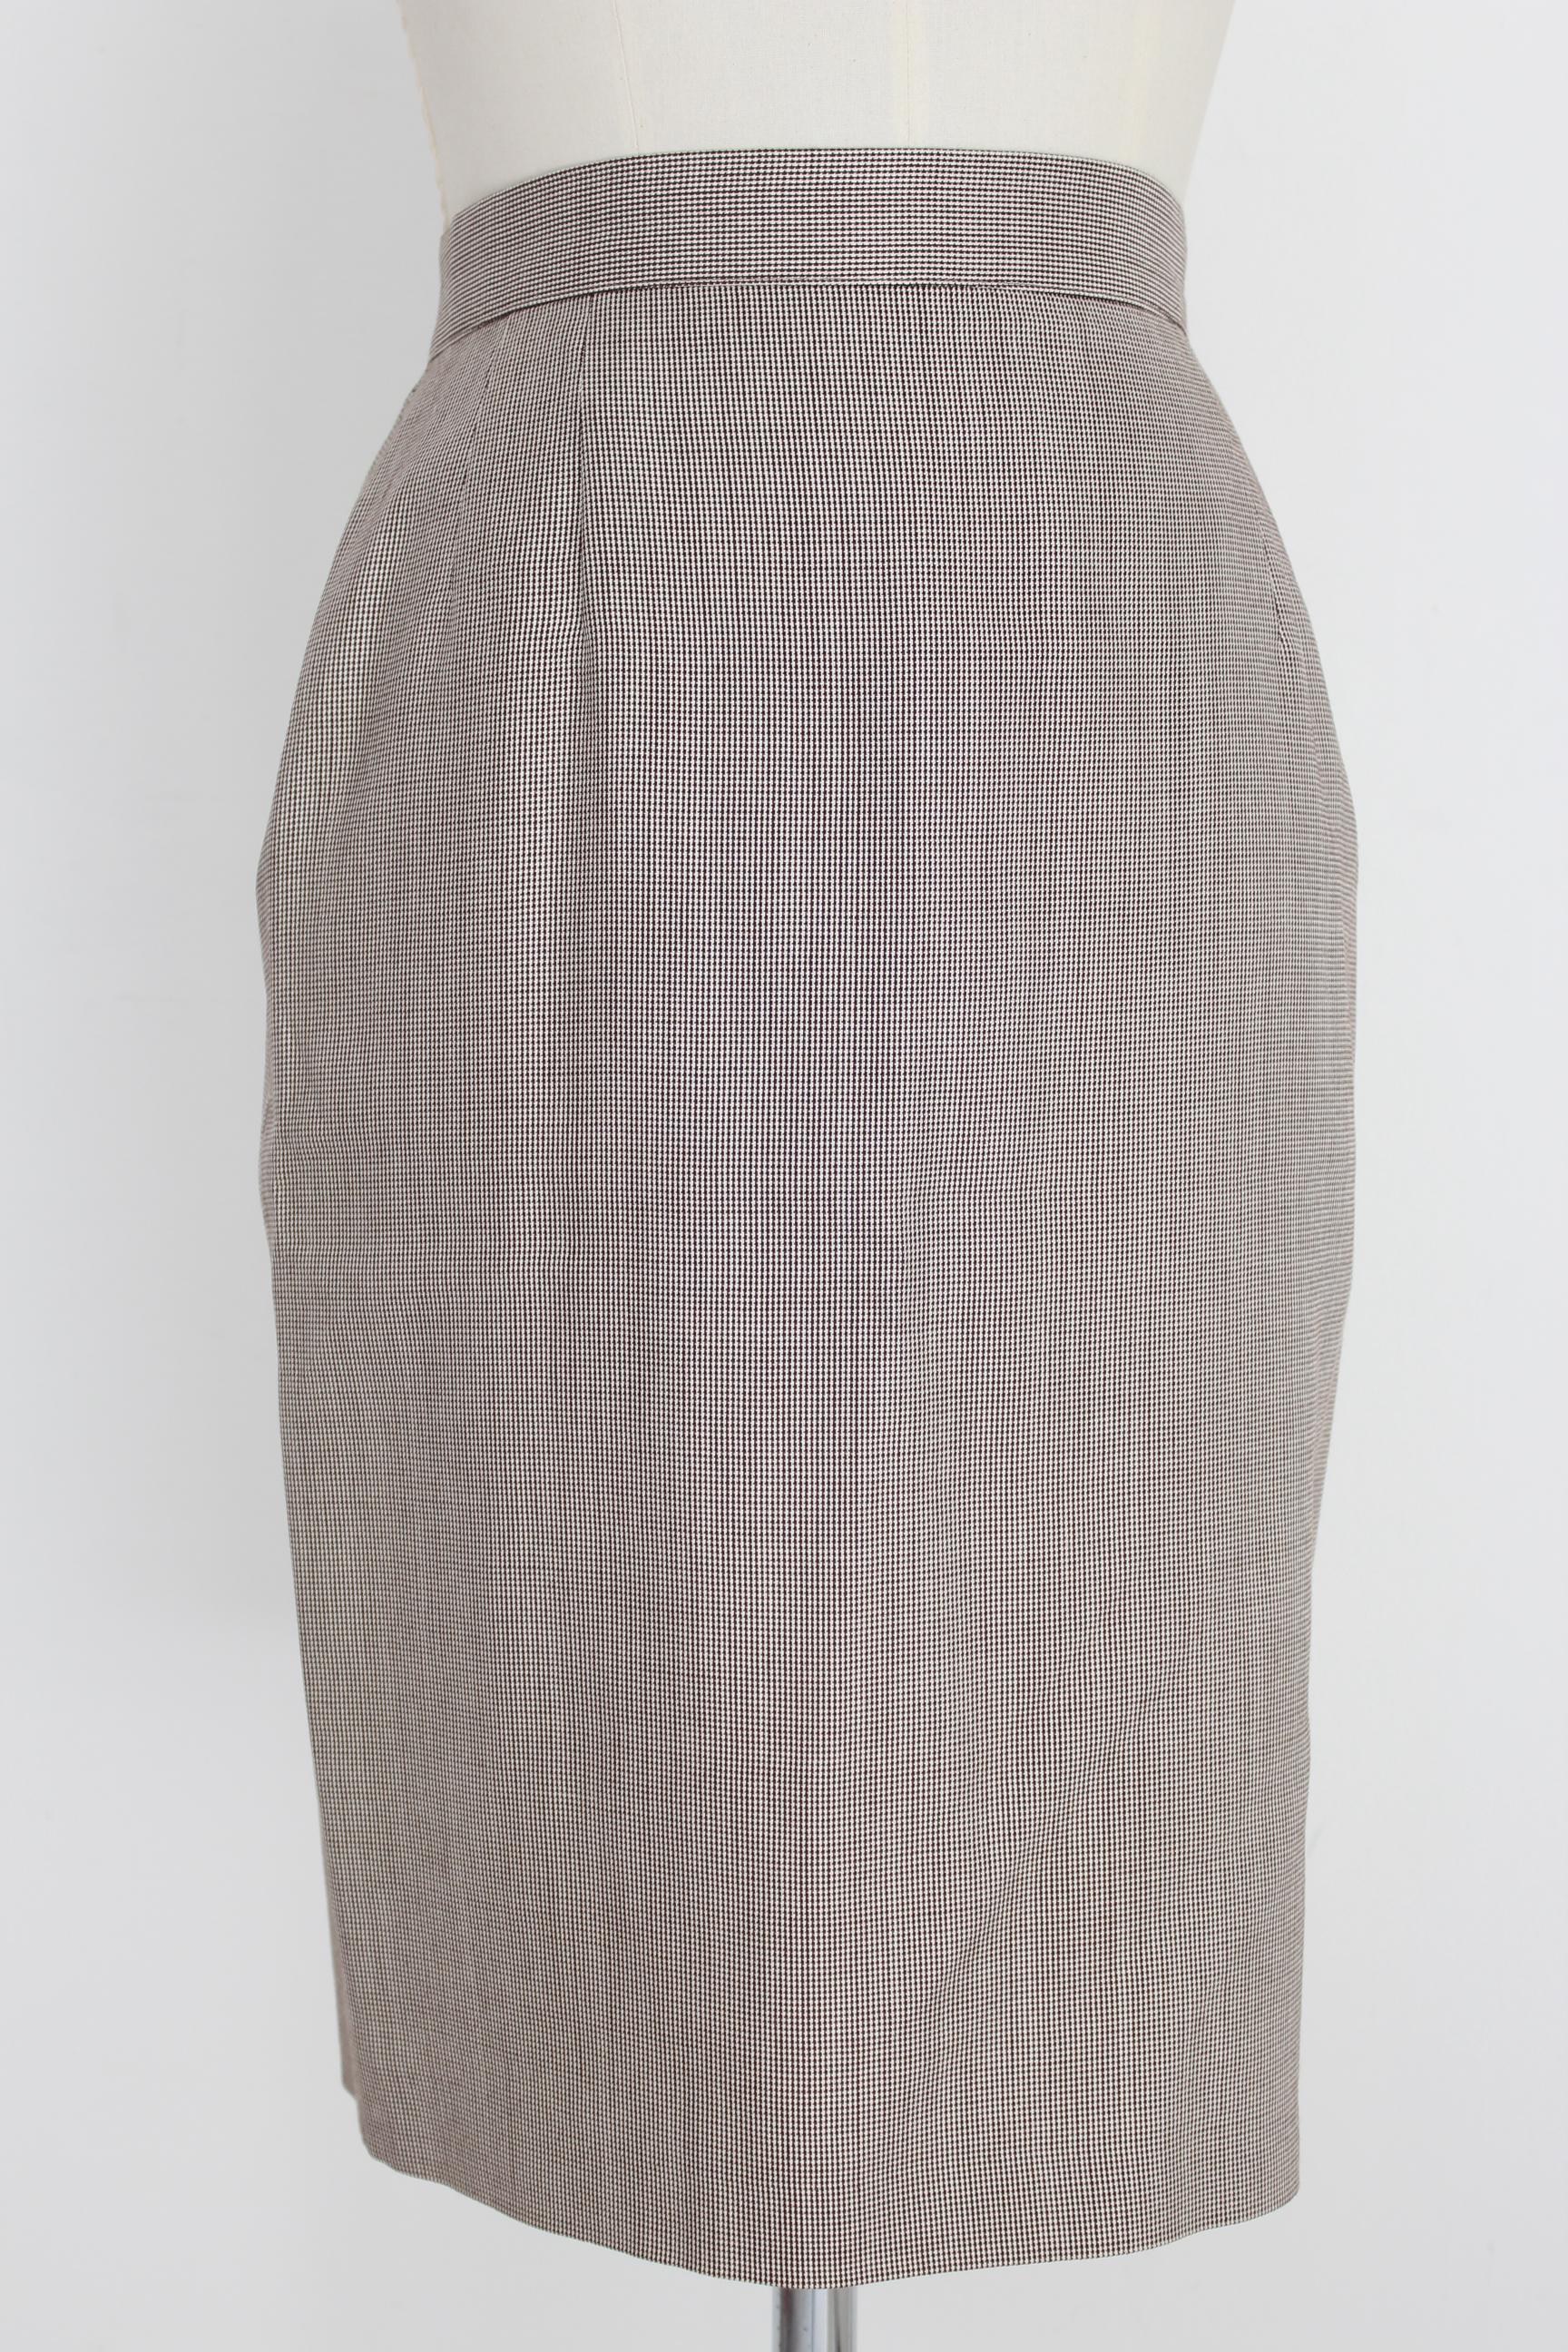 Valentino Silk Wool Beige Vintage Pied de Poule Classic Skirt Suit For Sale 3